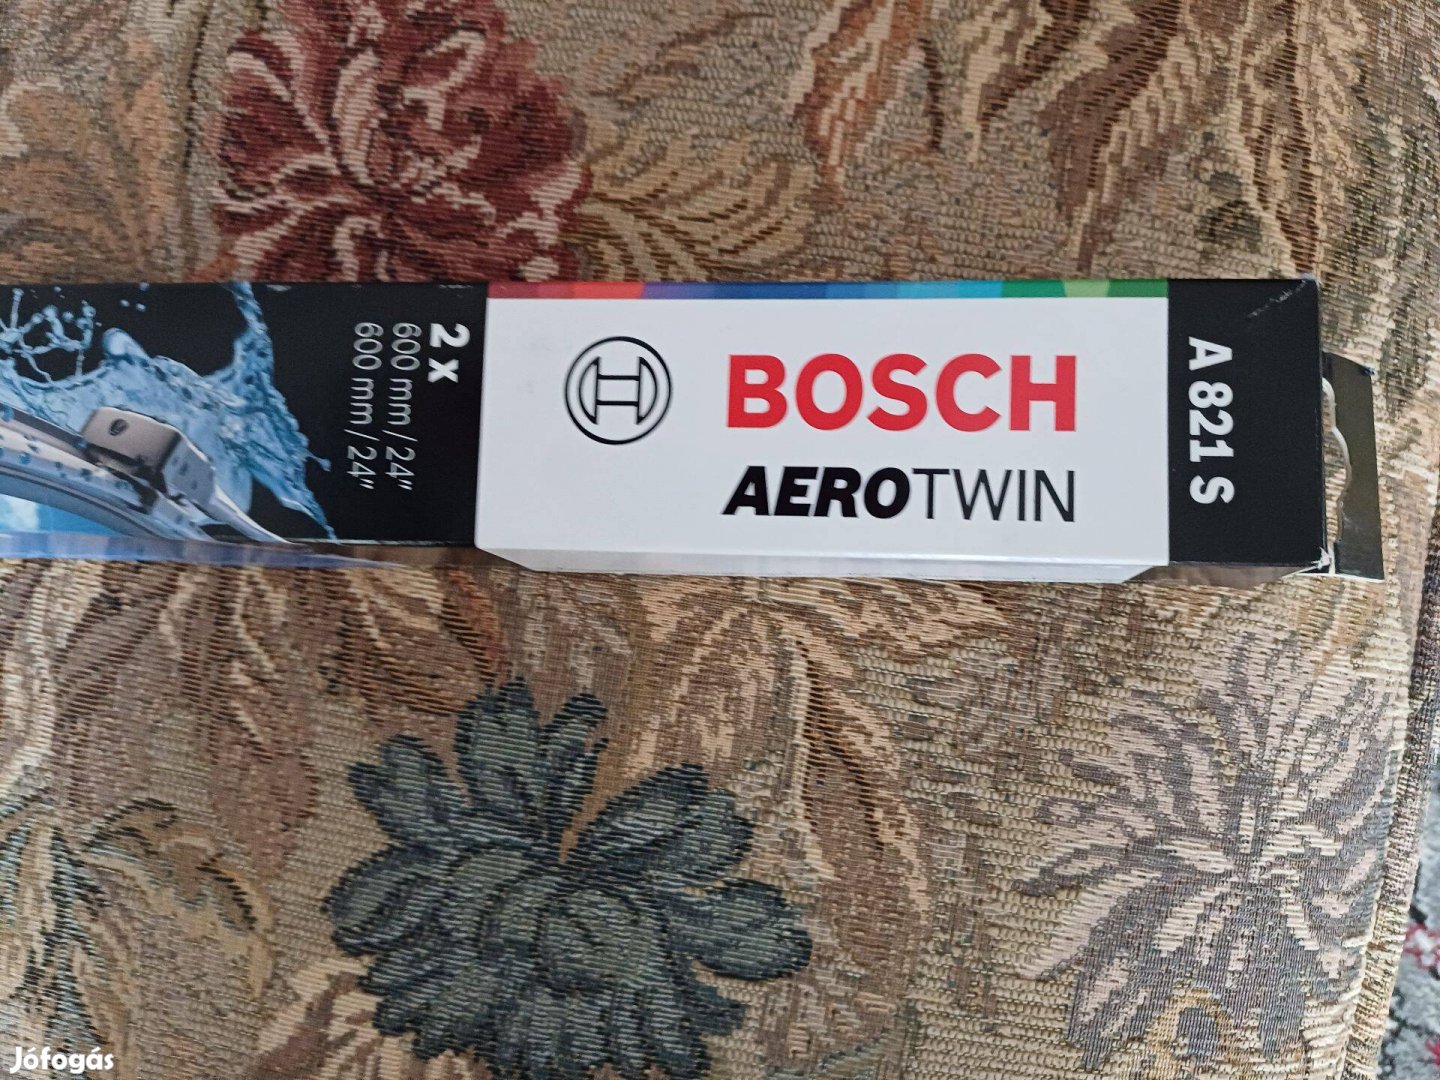 Bosch tipusú ablaktörlő lapátok eladóak